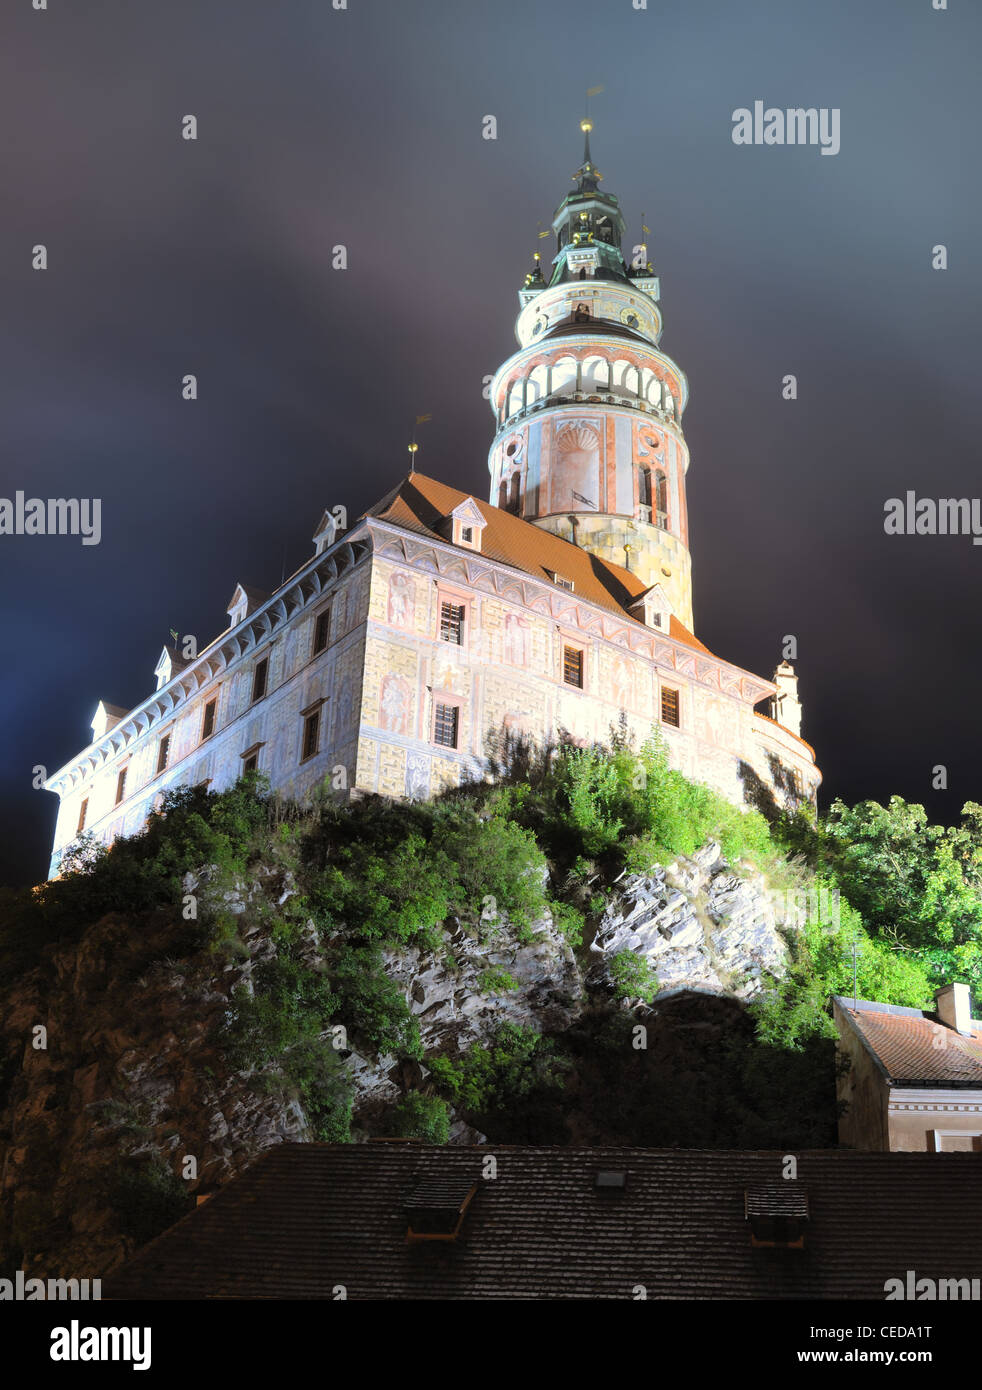 Krumlov Castle in Cesky Krumov, Czech Republic. Stock Photo